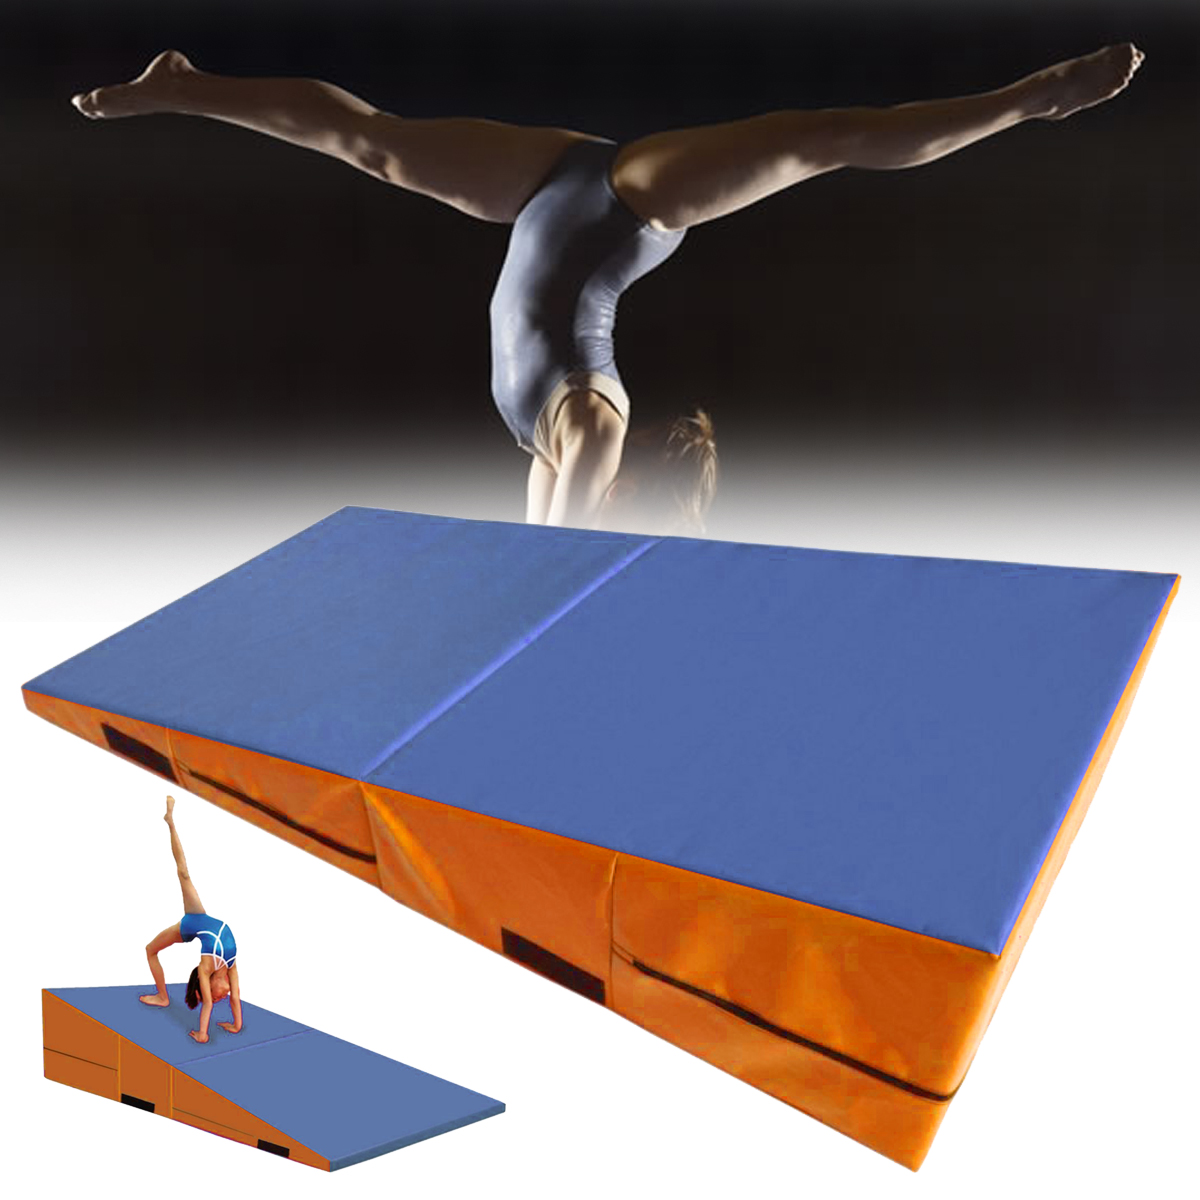 

Складная гимнастика Мат Yoga Упражнение тренажерный зал Airtrack Panel Tumbling Восхождение Pilates Pad Air Track